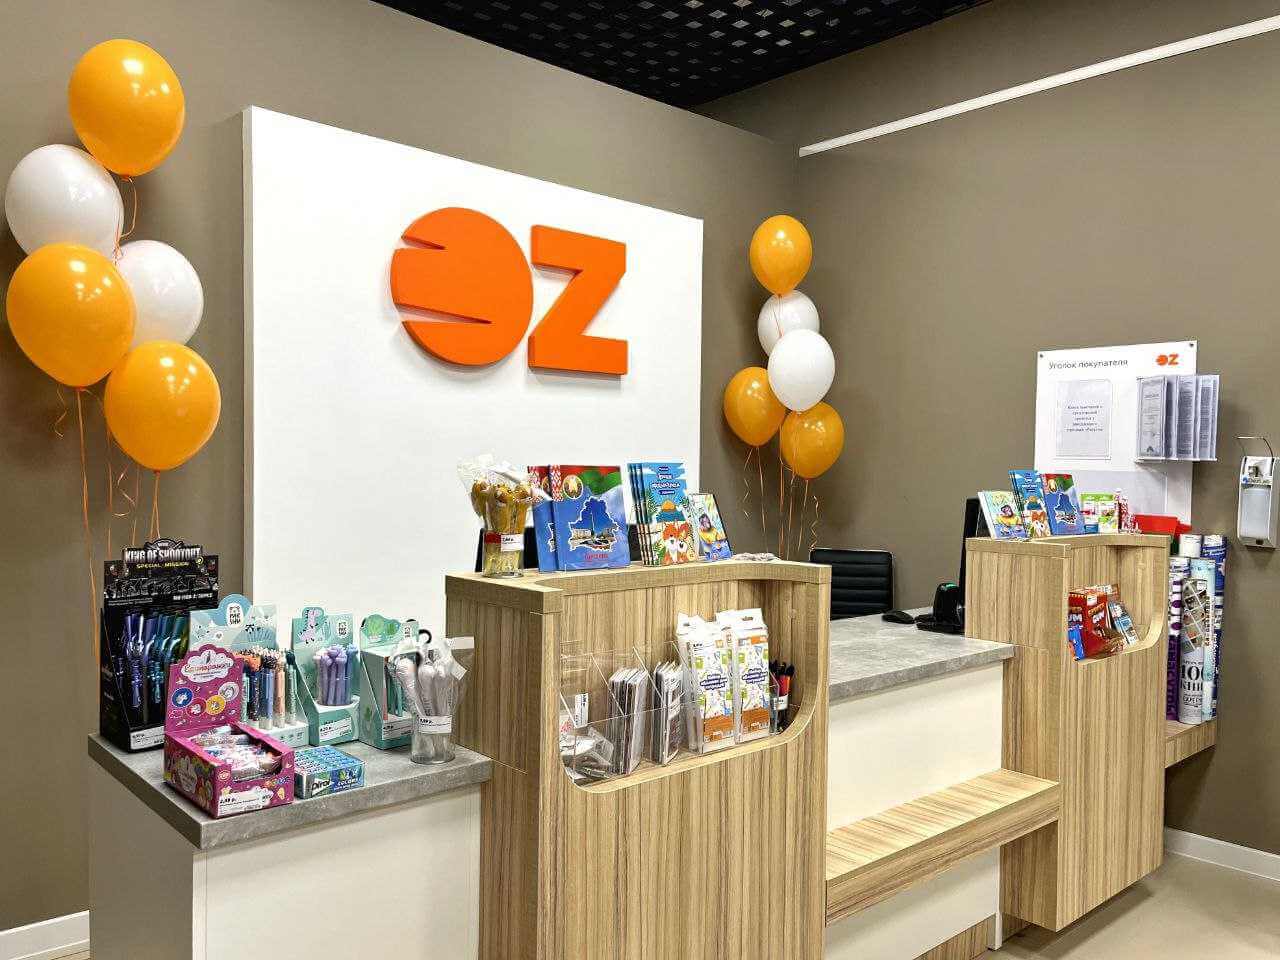 В Могилеве открыли магазин-джоймаркет OZ. Что внутри и почем?